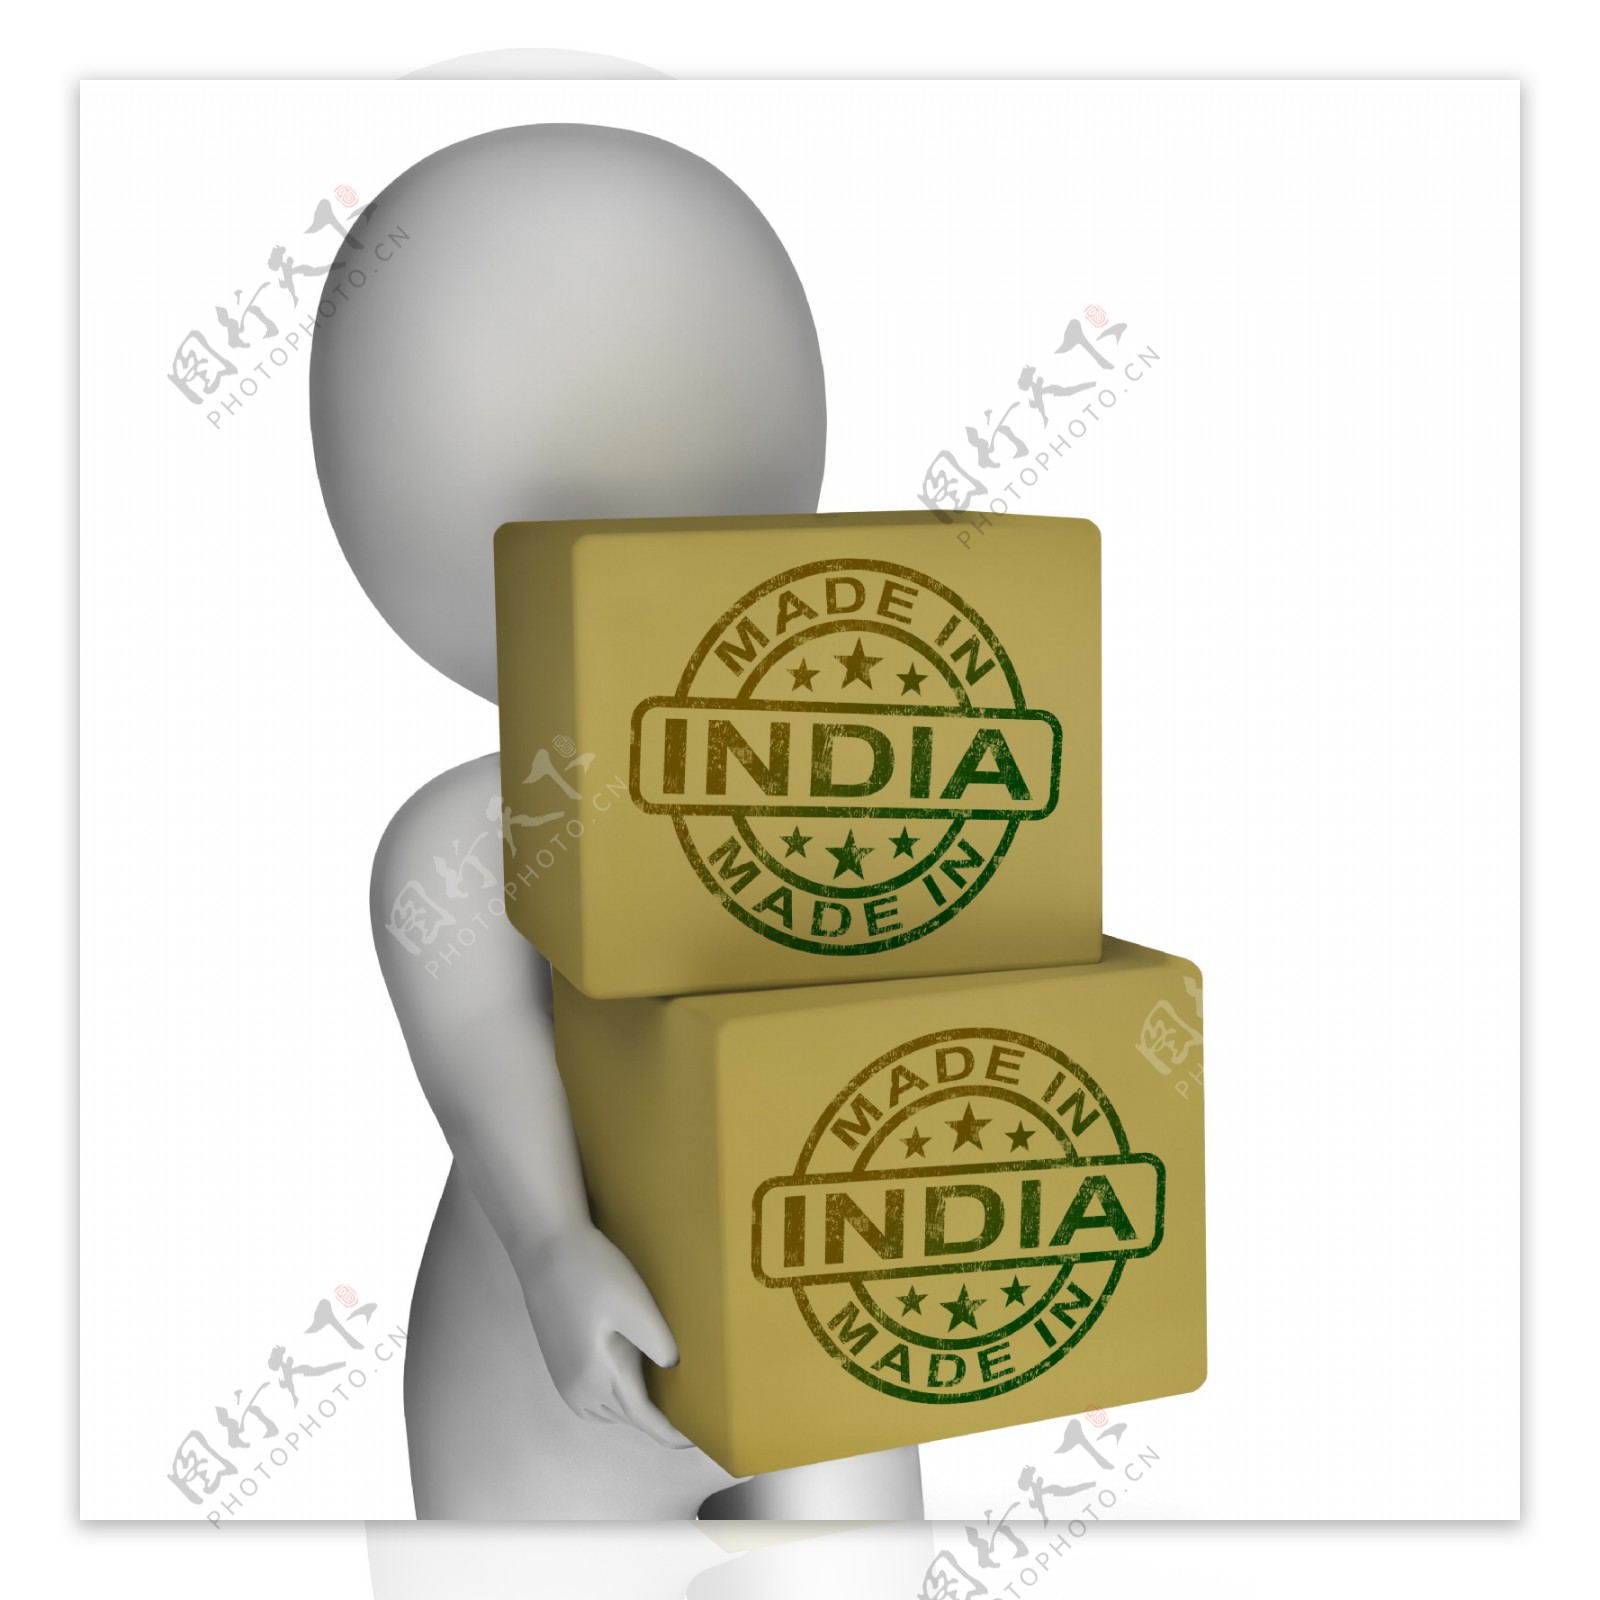 印度邮票的盒子显示印度产品